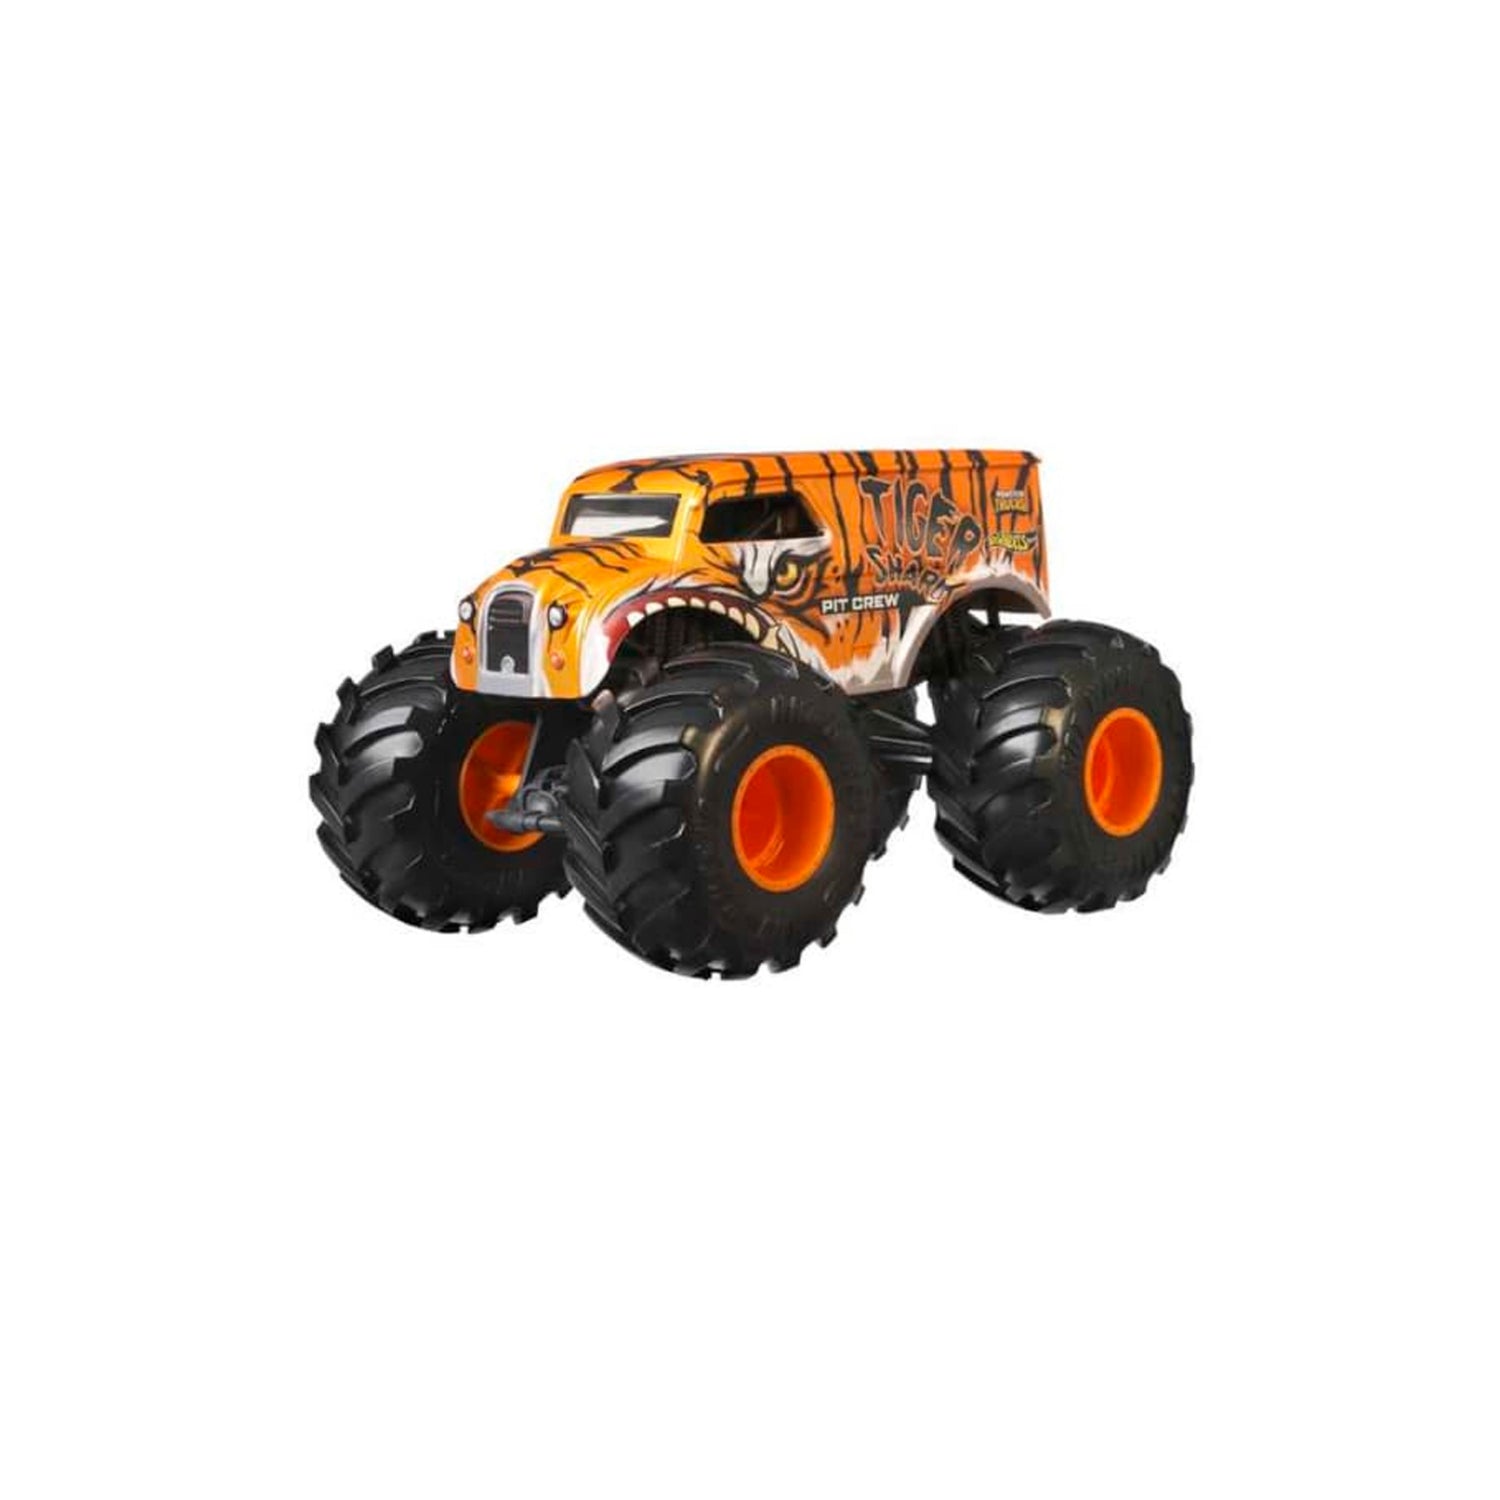 Monster Oversized Monster Truck, Mattel Trucks, Scale S&D 1:24 Kids – Hot Wheels